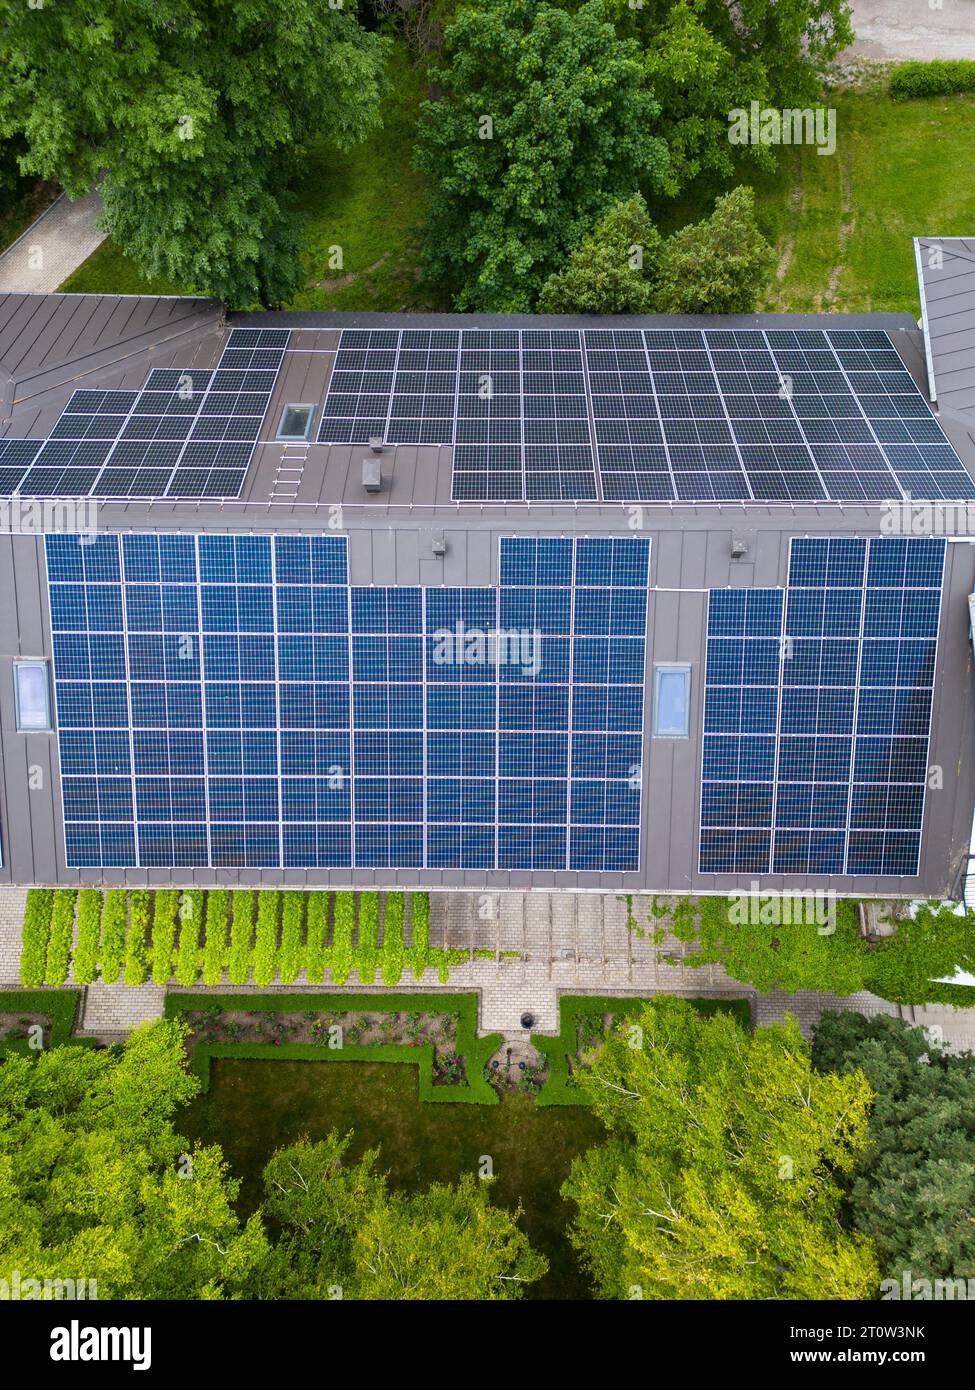 La casa moderna con un techo diseñado como un gran panel solar, que combina estilo y sostenibilidad. Su diseño elegante y funcional aprovecha el sol Foto de stock